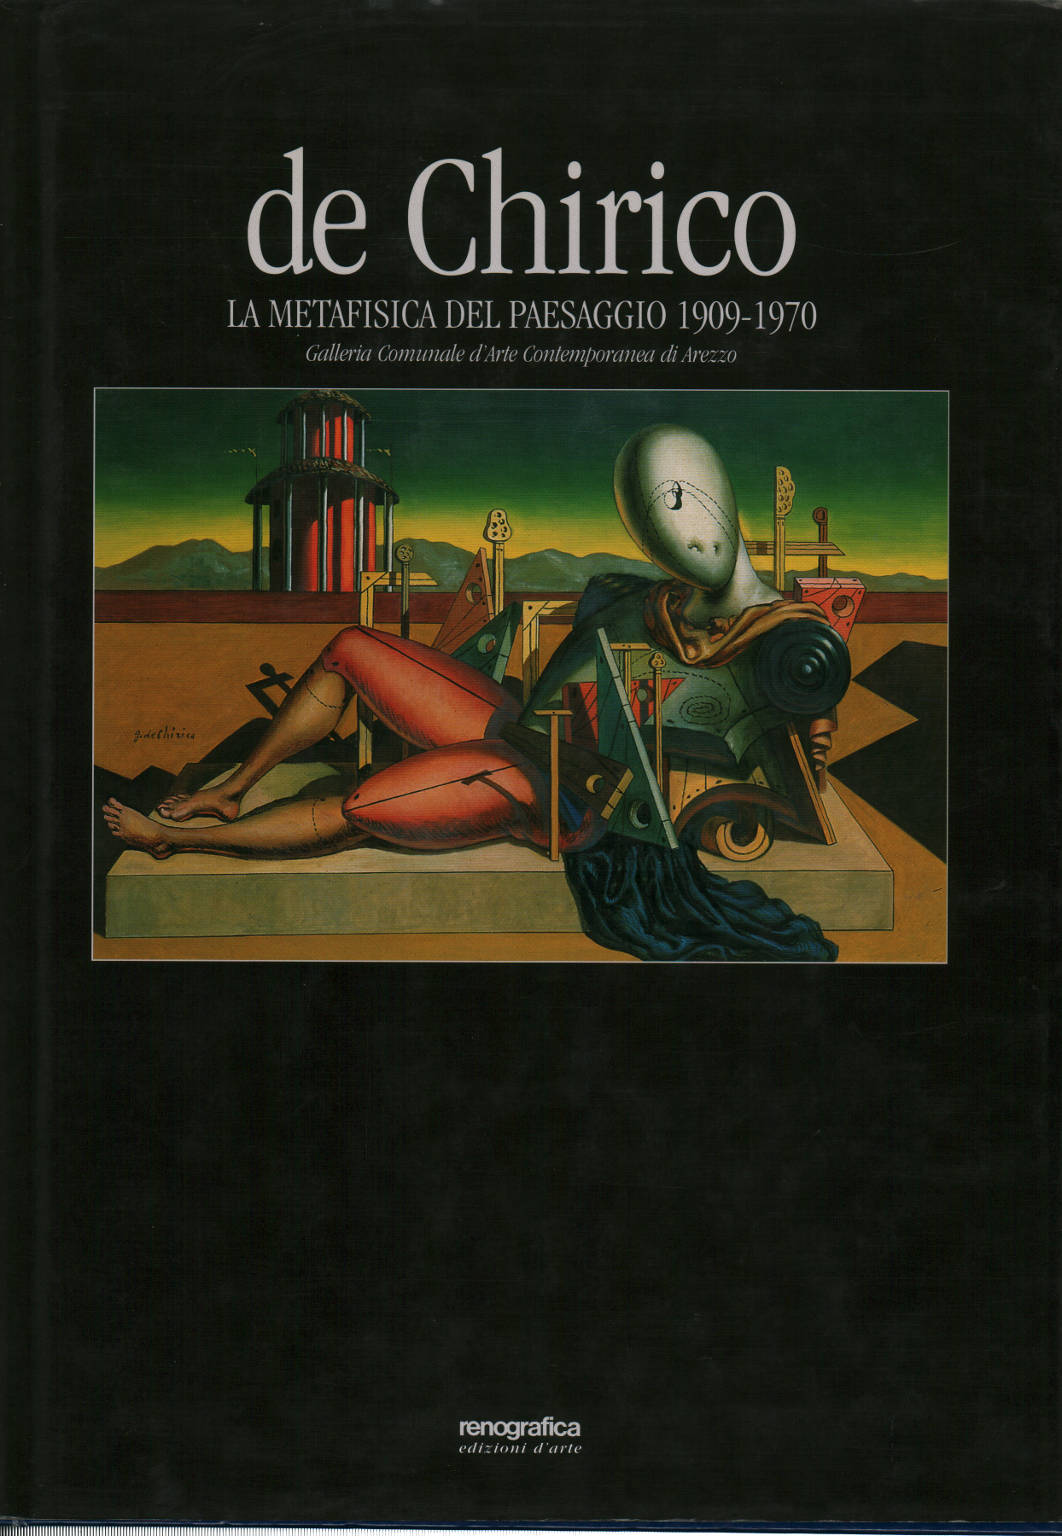 De Chirico: the metaphysical landscape 1909-1970, Maurizio Fagiolo Dell'arco